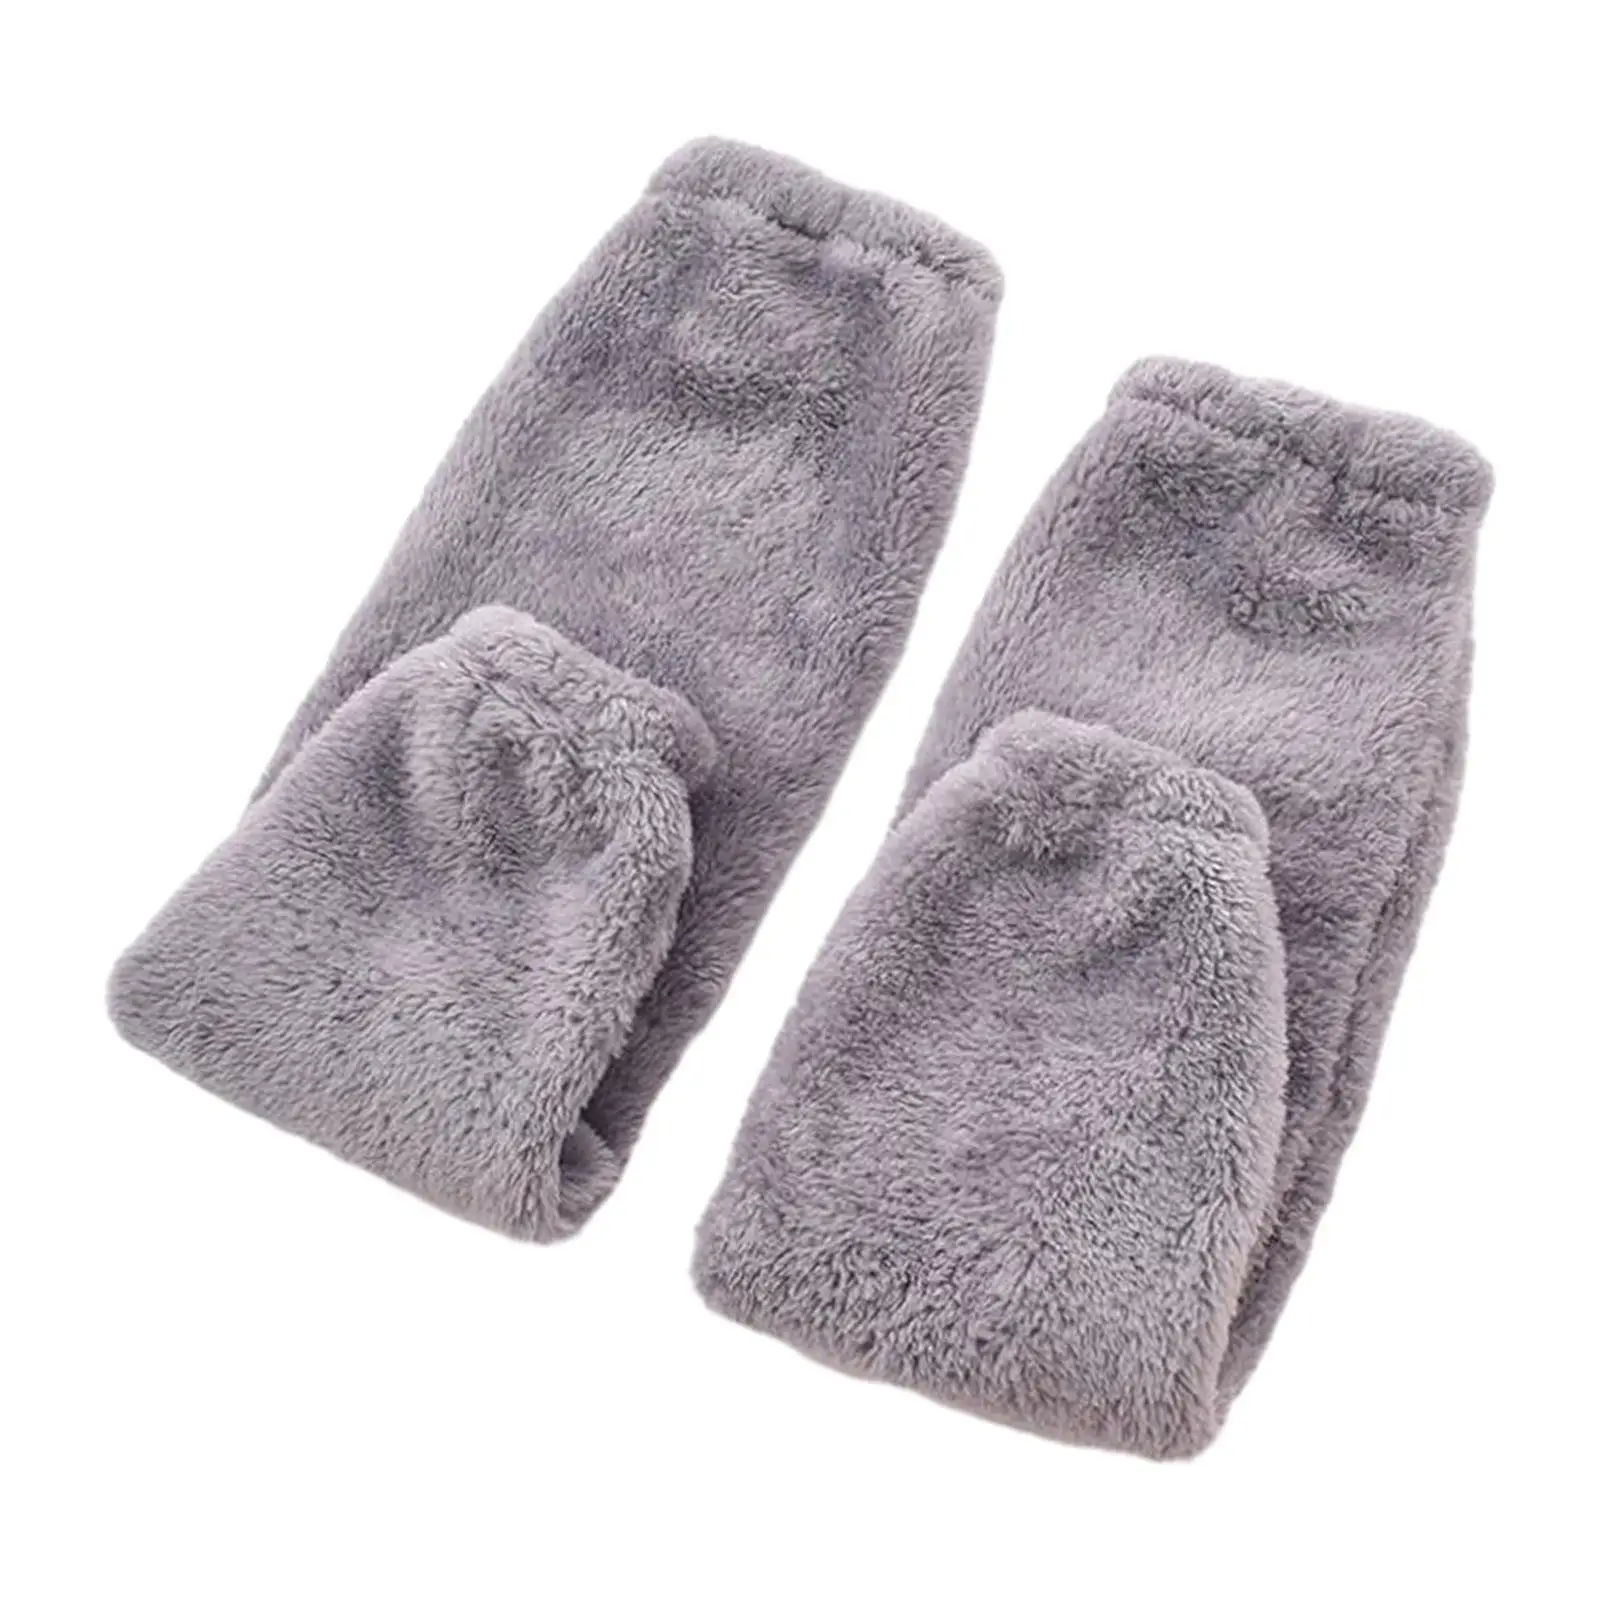 Plush Leg Warmers Knee Brace Knee Pads Leg Guards Slipper Stockings Long Thigh High Socks for Living Room Bedroom Office Winter